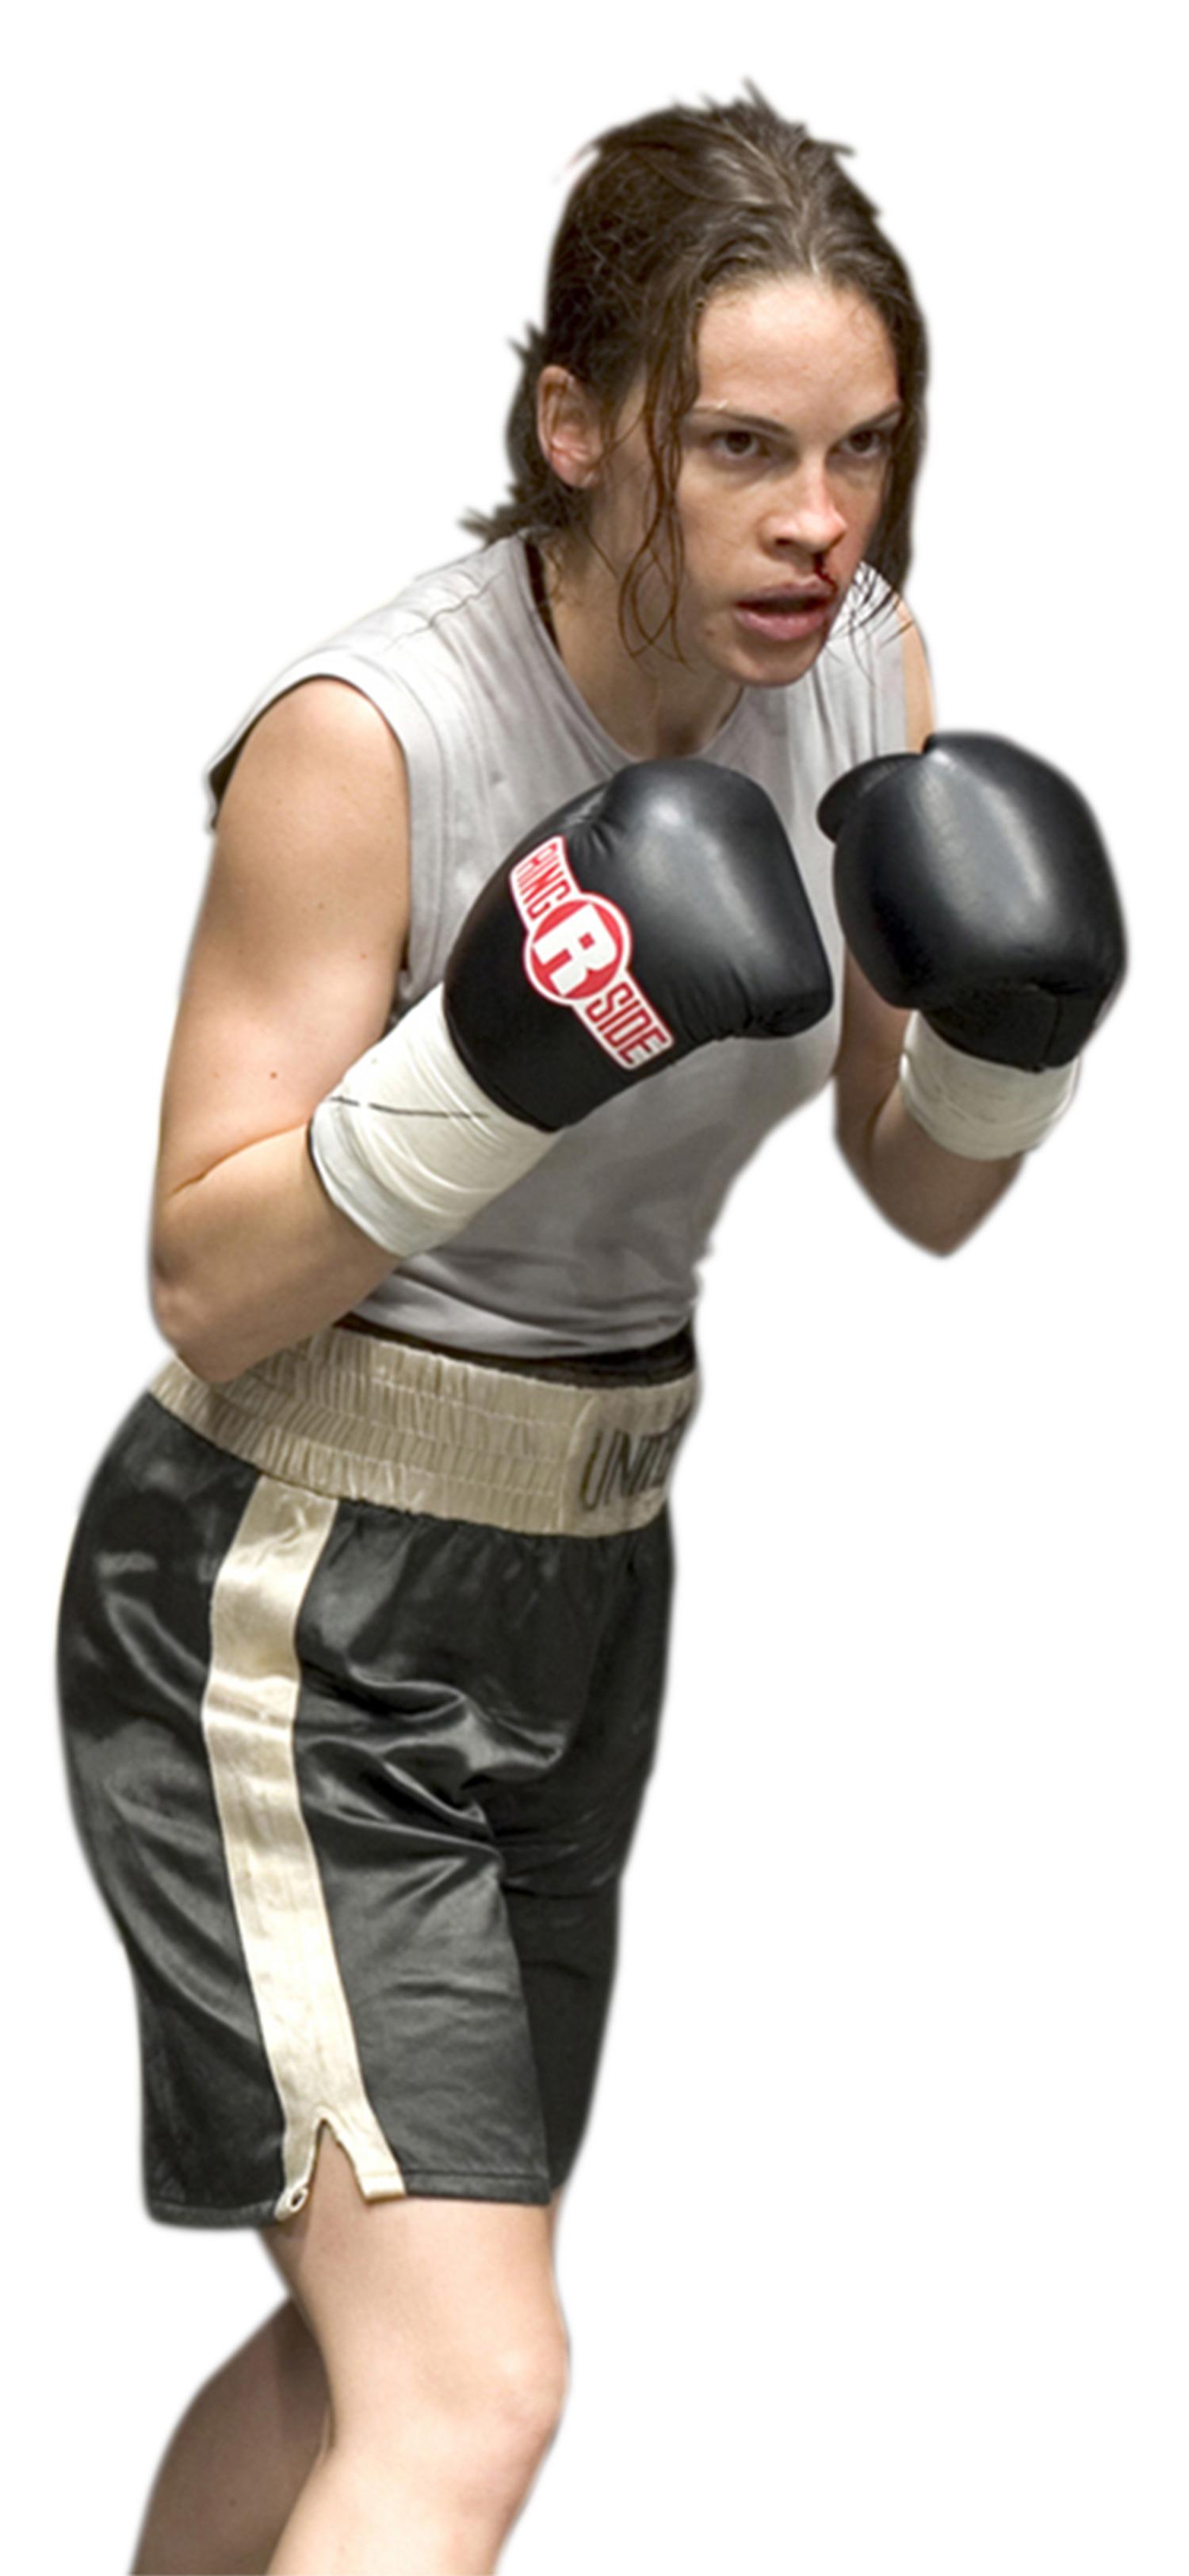 Hilary Swank genomgick ett hårt träningsprogram inför rollen som boxare.